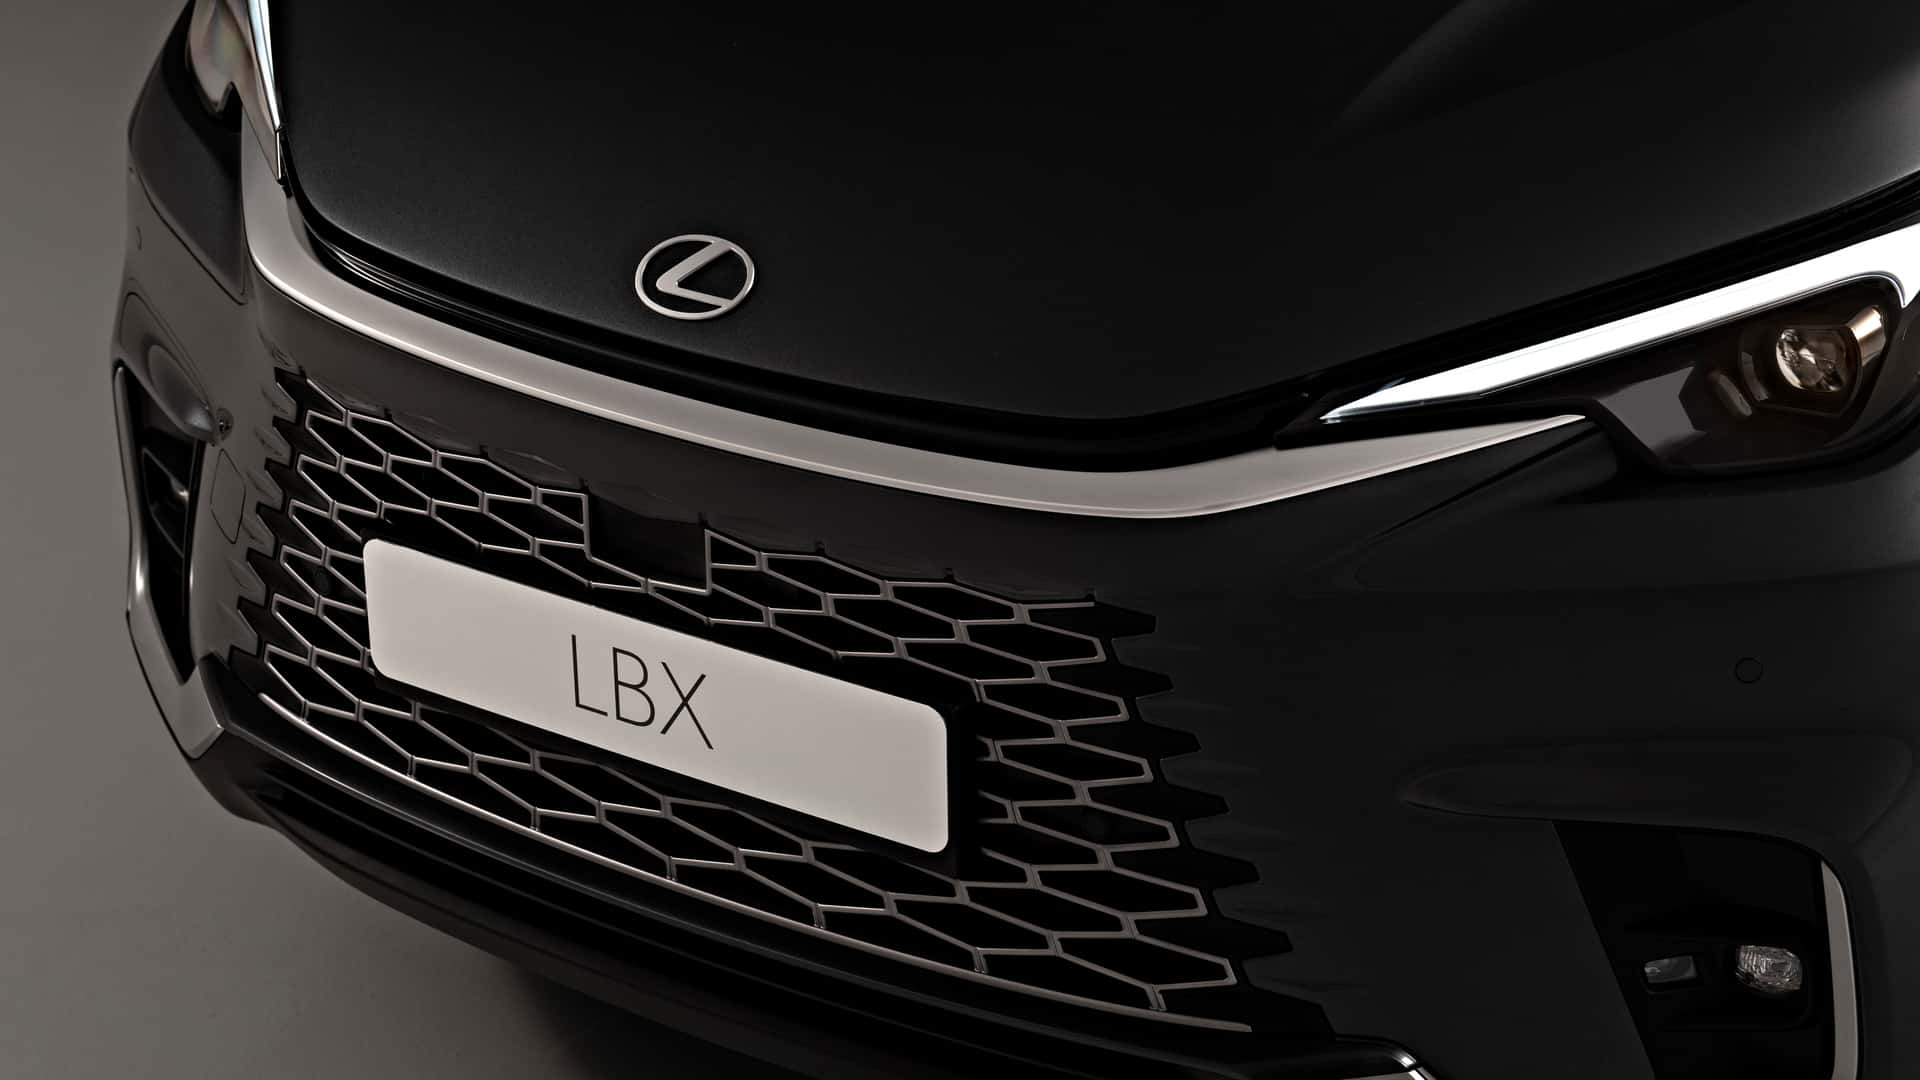 Yeni Lexus LBX tanıtıldı: 136 beygirlik lüks ve hibrit B SUV